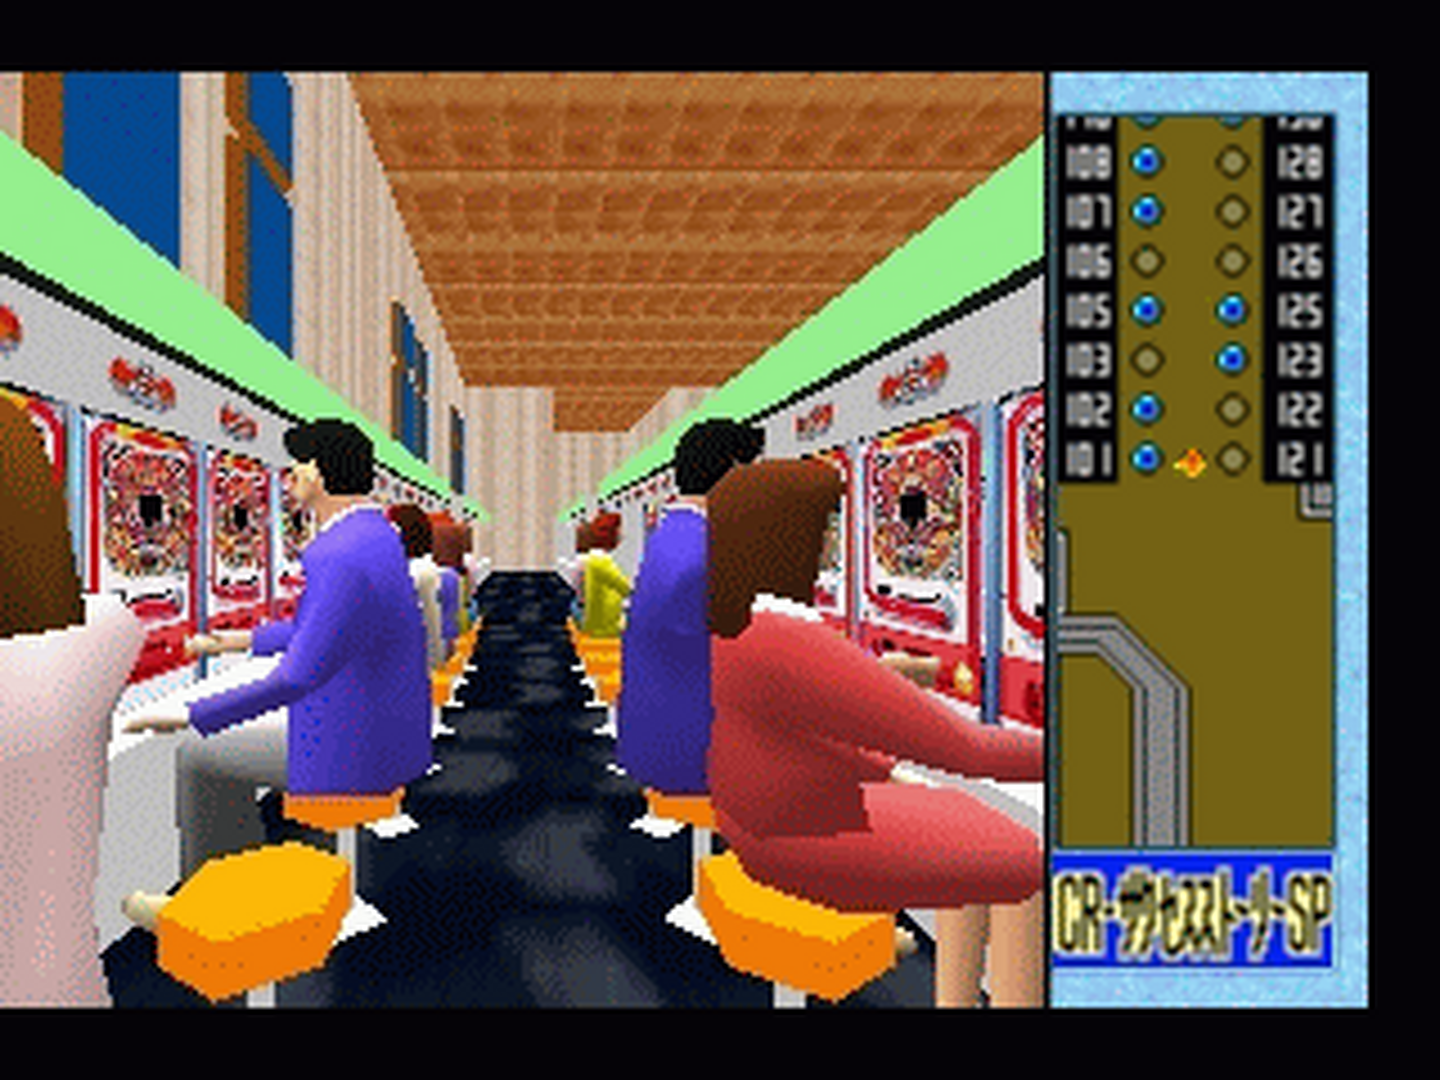 N64 GameBase Heiwa_Pachinko_World_64_(J) Shouei_System 1997